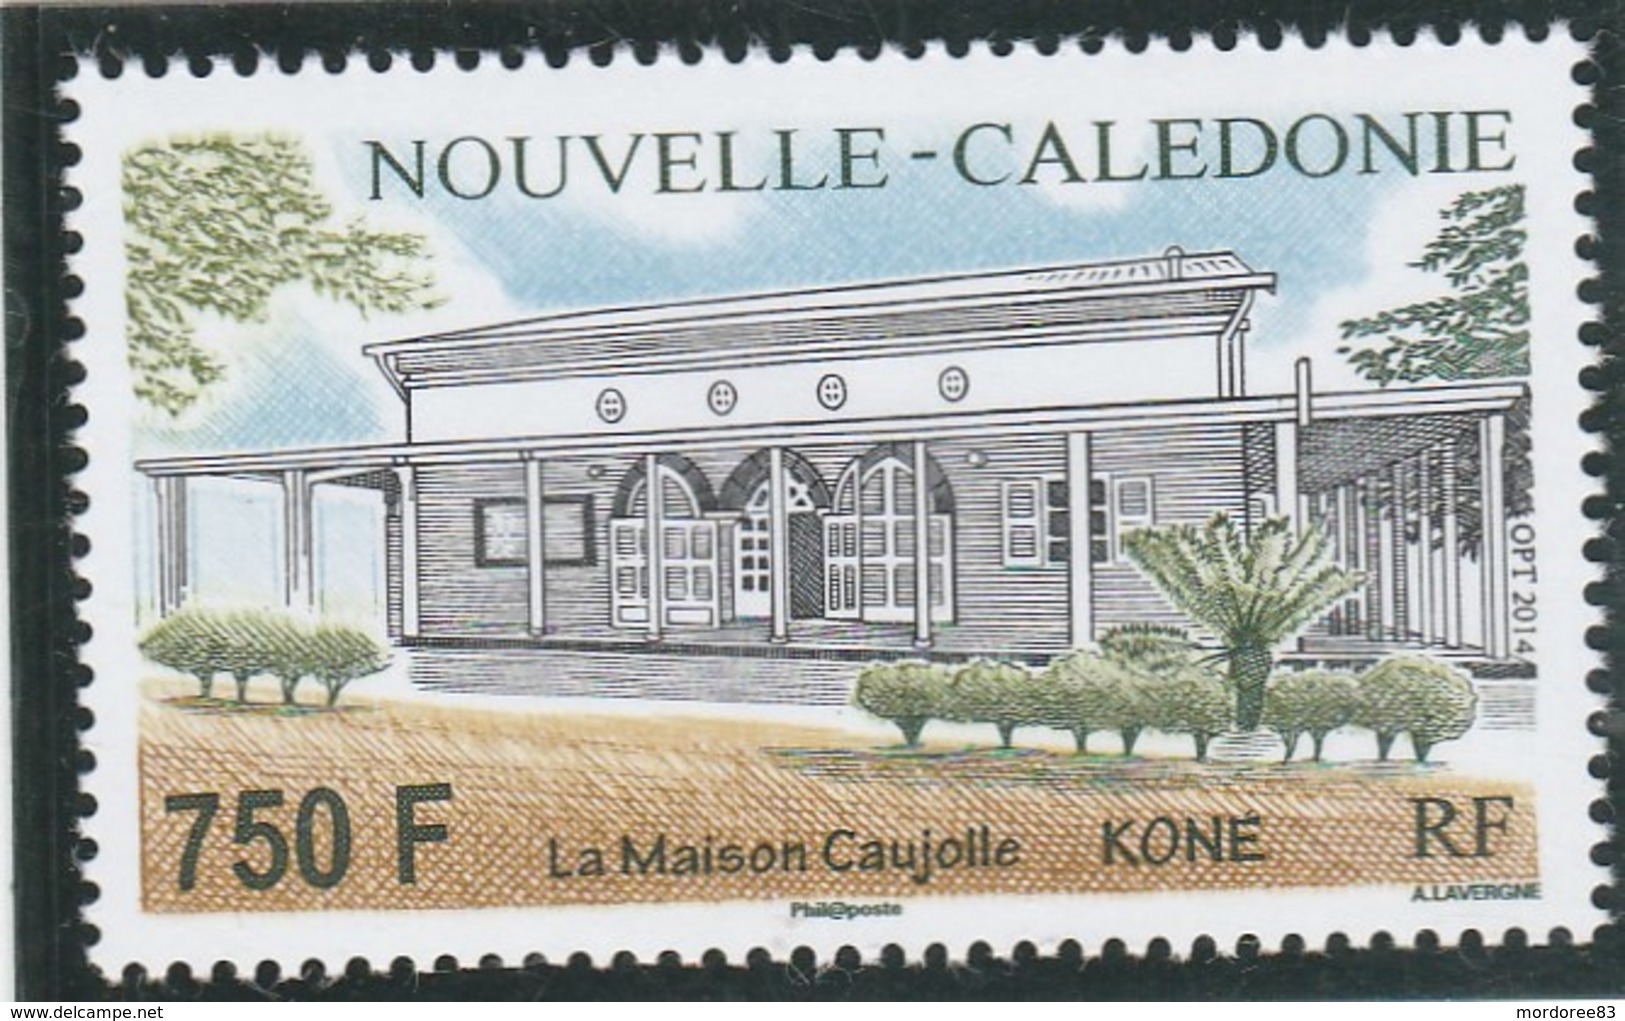 NOUVELLE CALEDONIE - 2014 - LA MAISON CAUJOLLE - NEUF -                       TDA262 - Neufs